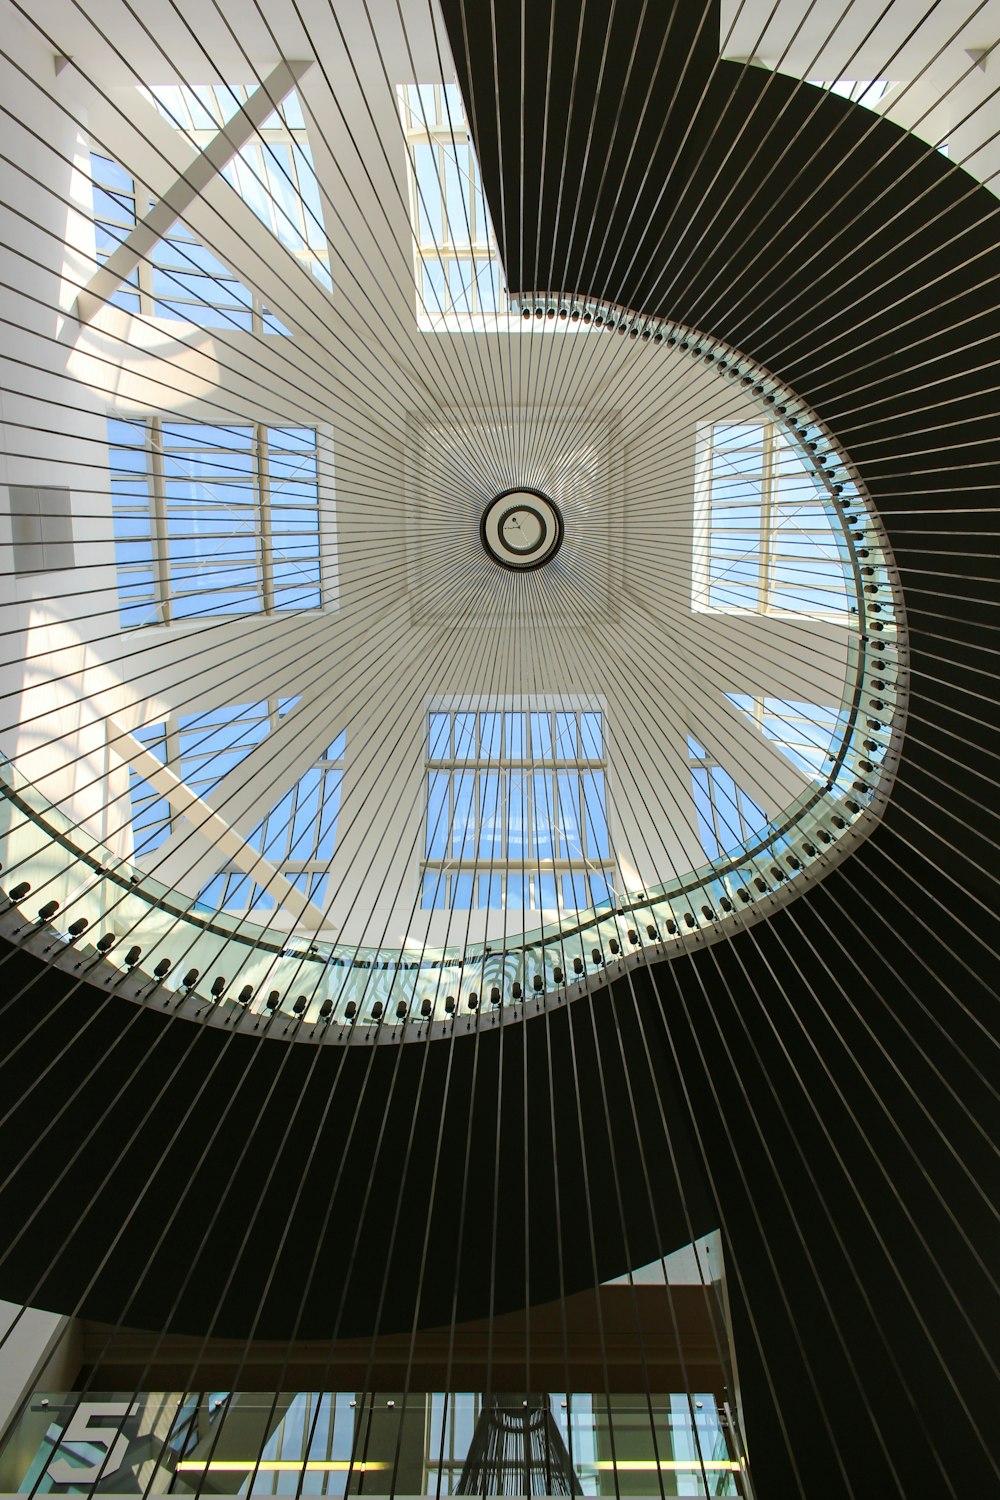 Die Decke eines Gebäudes mit einem spiralförmigen Design